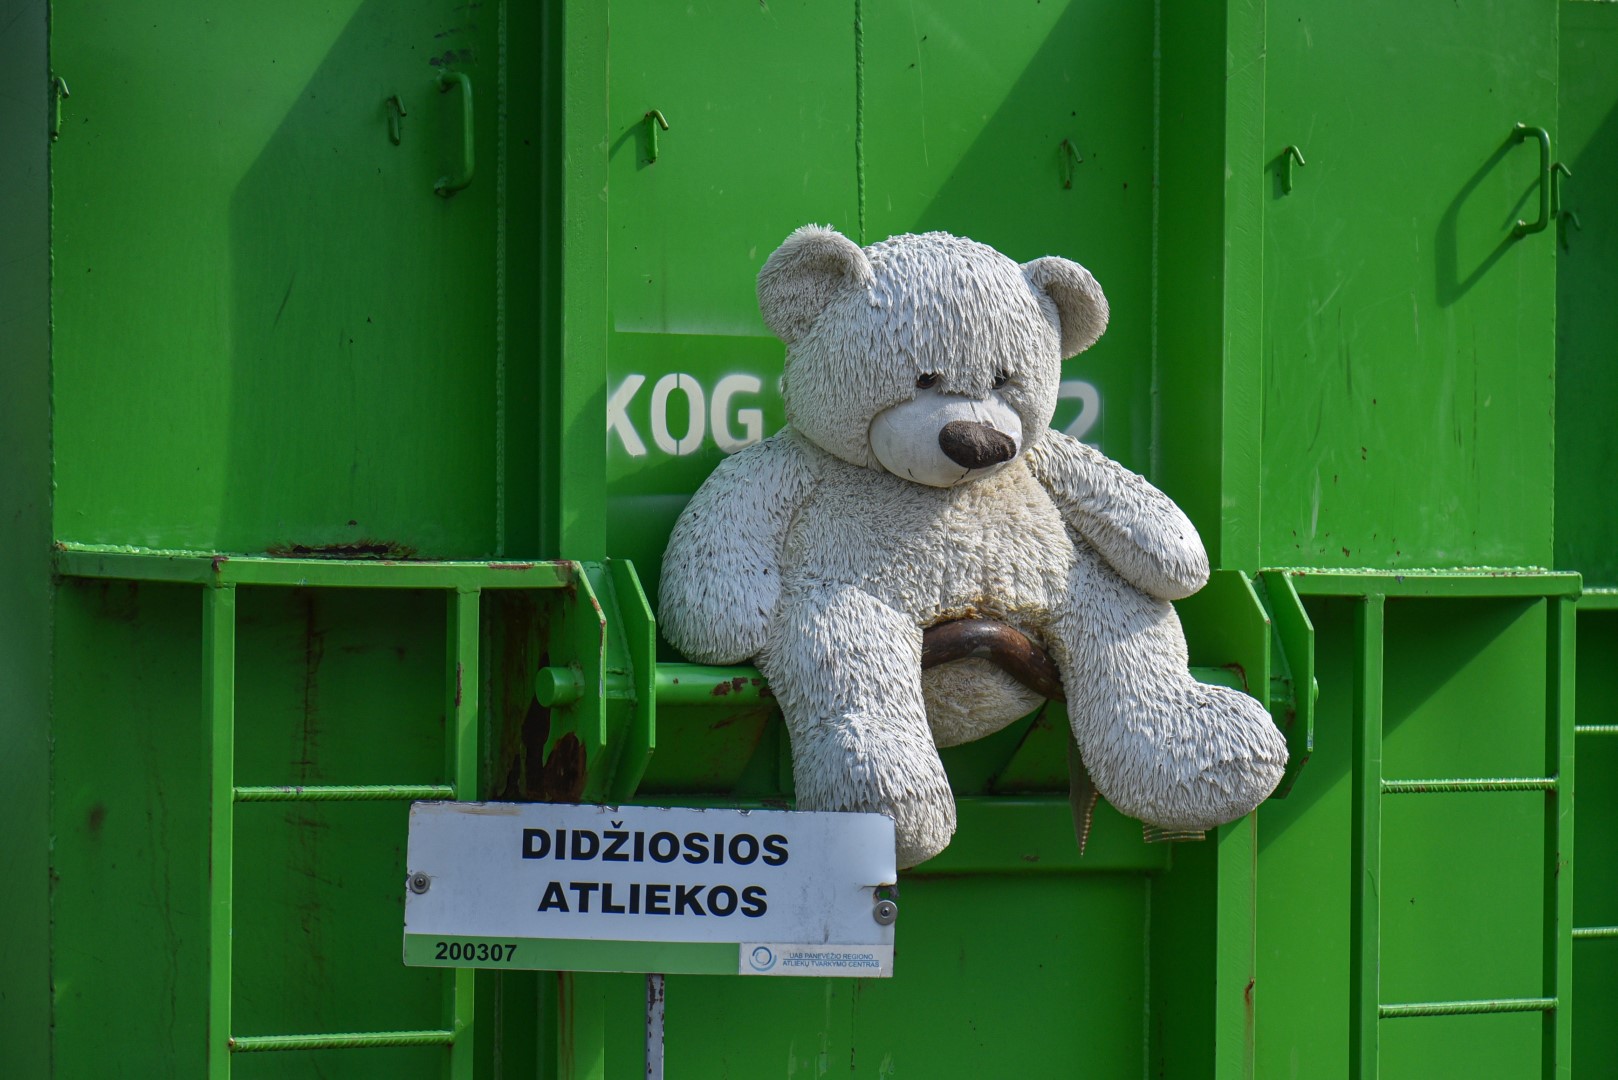 Atliekų tvarkymas – ypač daug diskusijų kelianti tema.